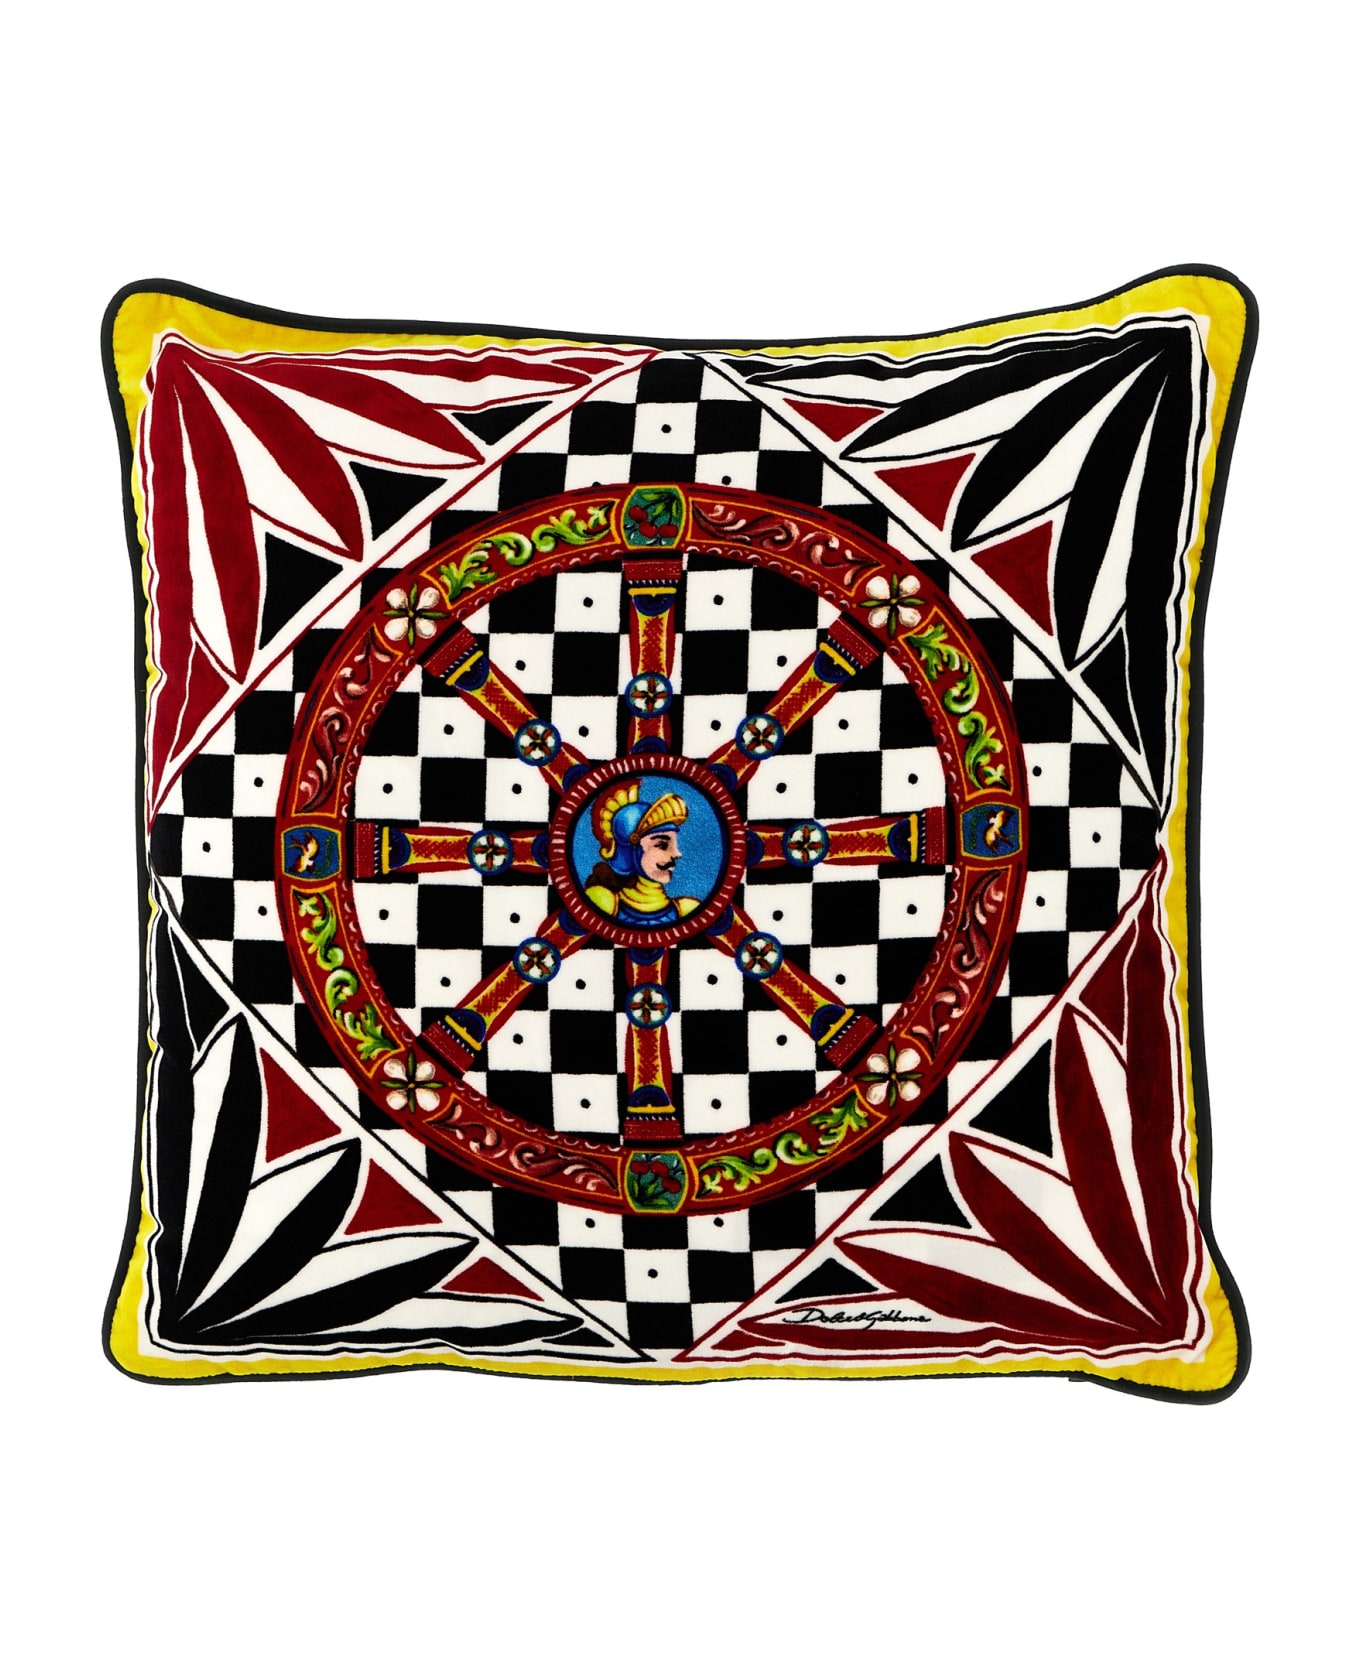 Dolce & Gabbana 'carretto Siciliano' Small Cushion - Multicolor